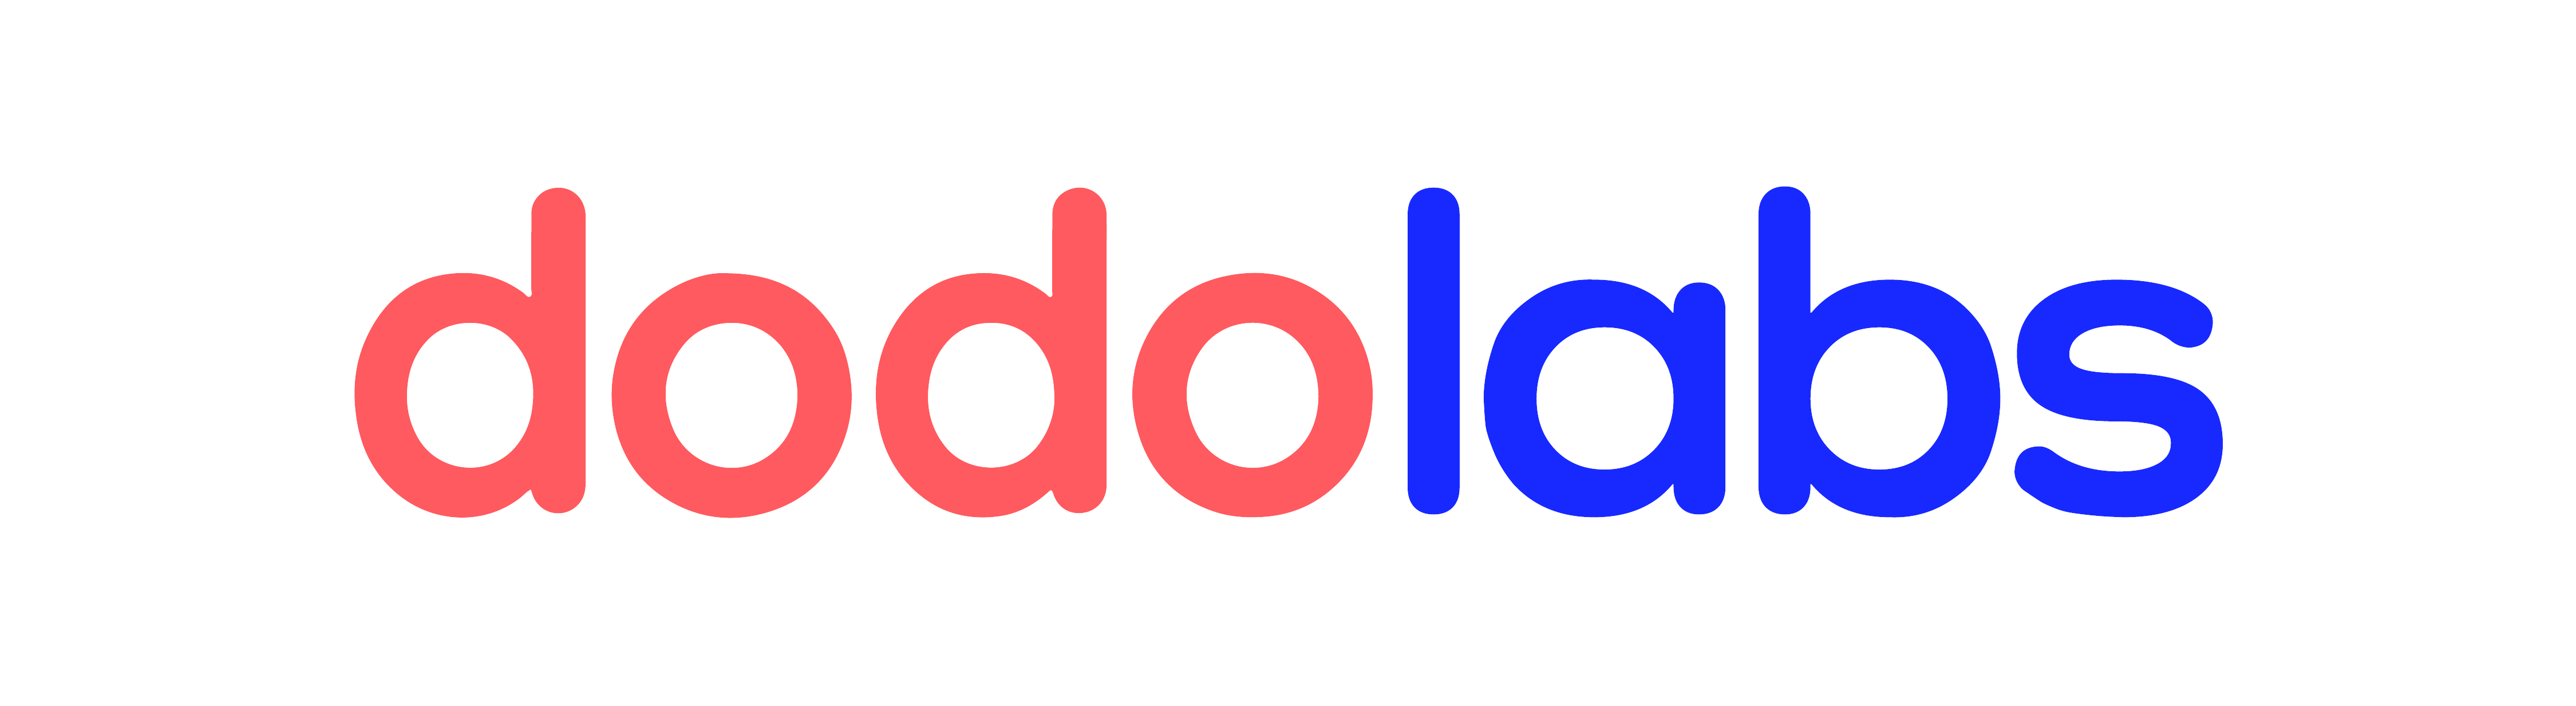 Dodo Logo